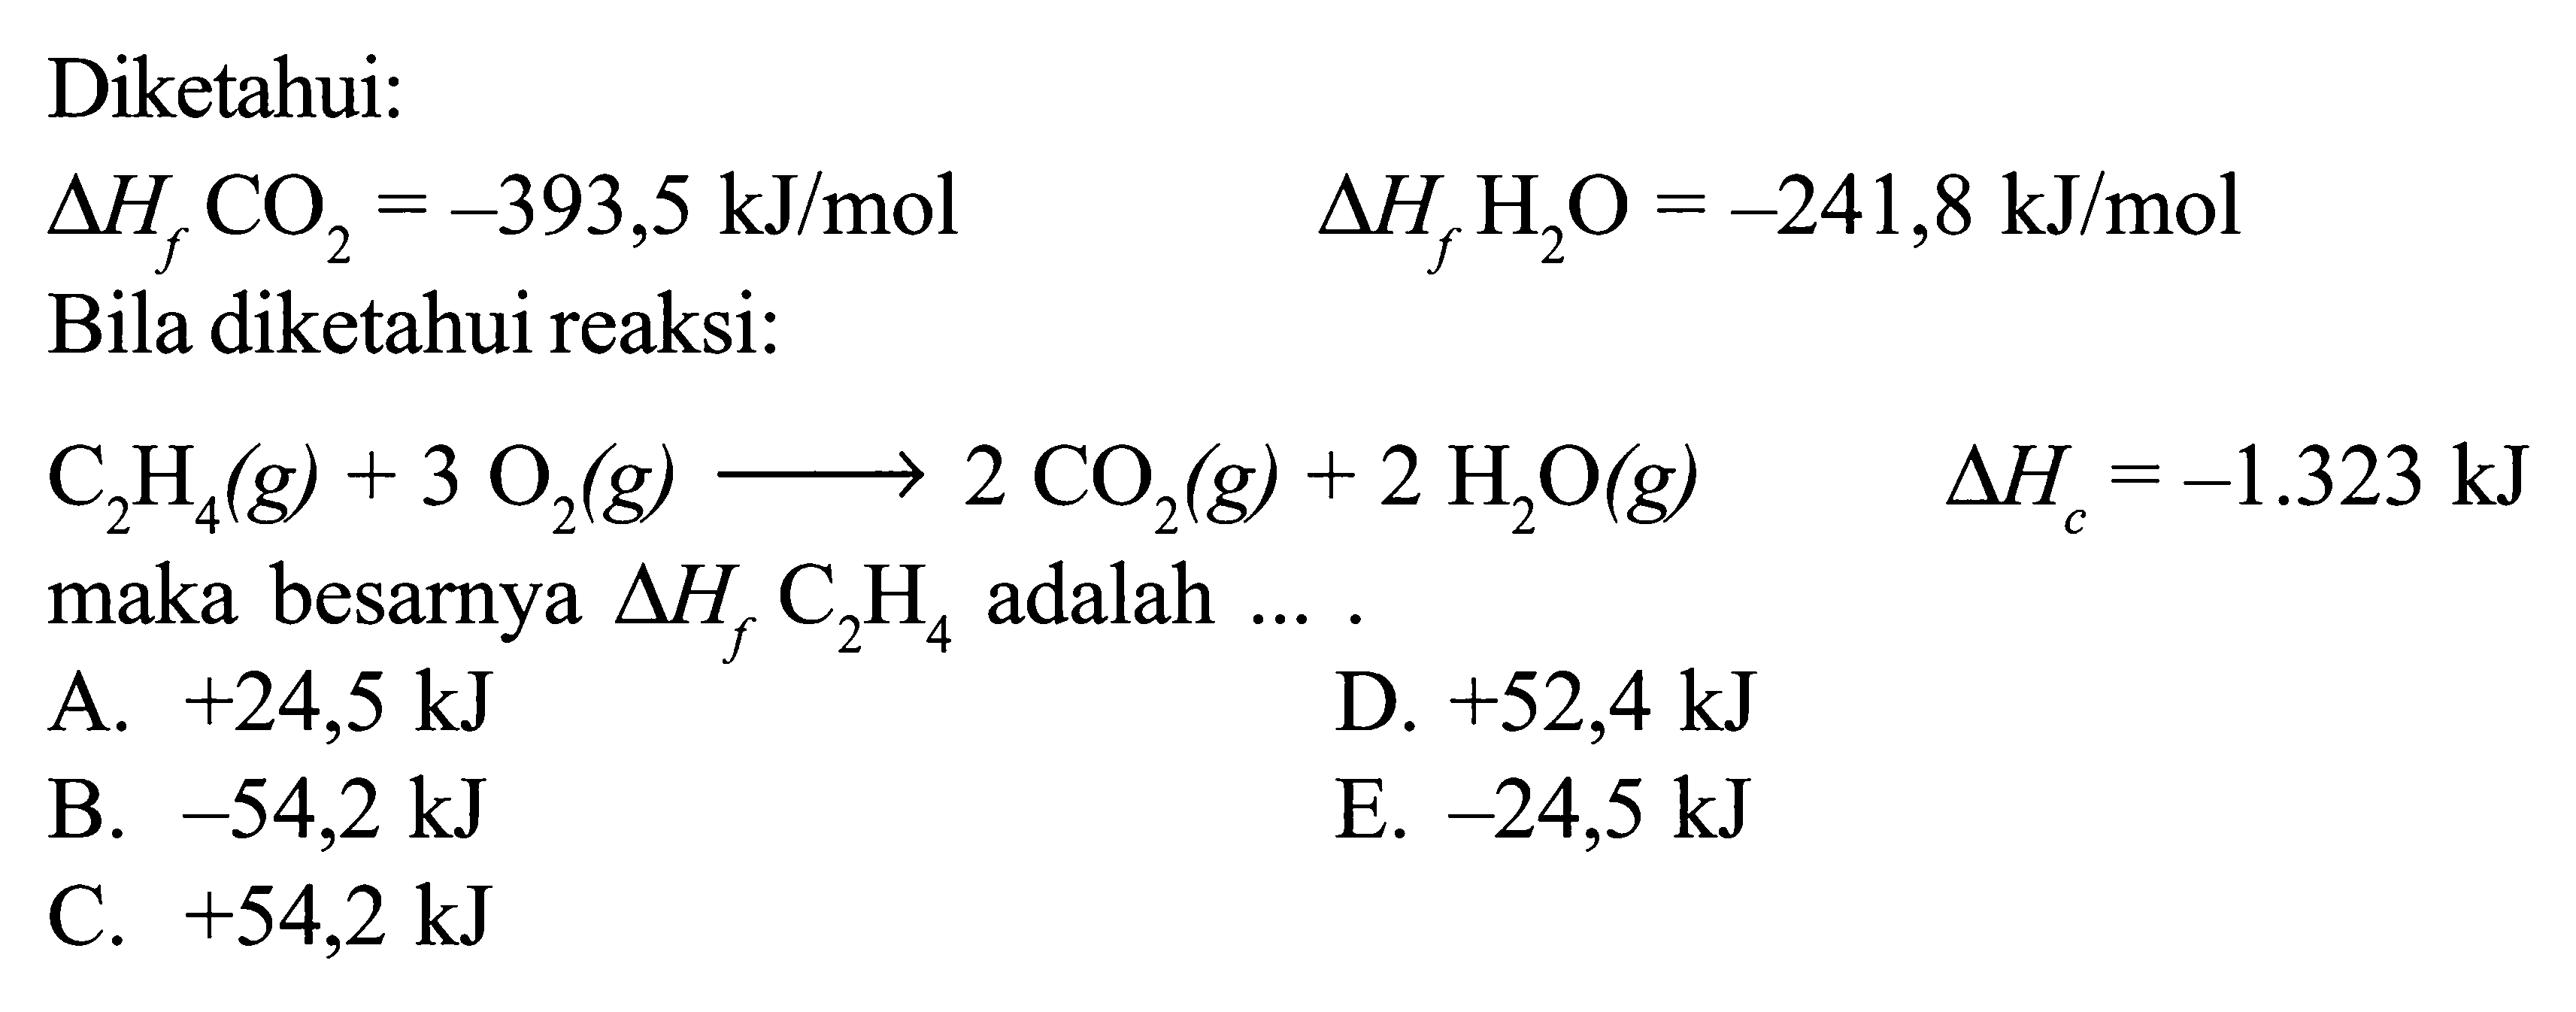 Diketahui: delta Hf CO2 = -393,5 kJ/mol delta Hf H2O = -241,8 kJ/mol Bila diketahui reaksi: C2H4 (g) + 3 O2 (g) -> 2 CO2 (g) + 2 H2O (g) delta Hc = -1.323 kJ maka besarnya delta Hf C2H4 adalah ... .